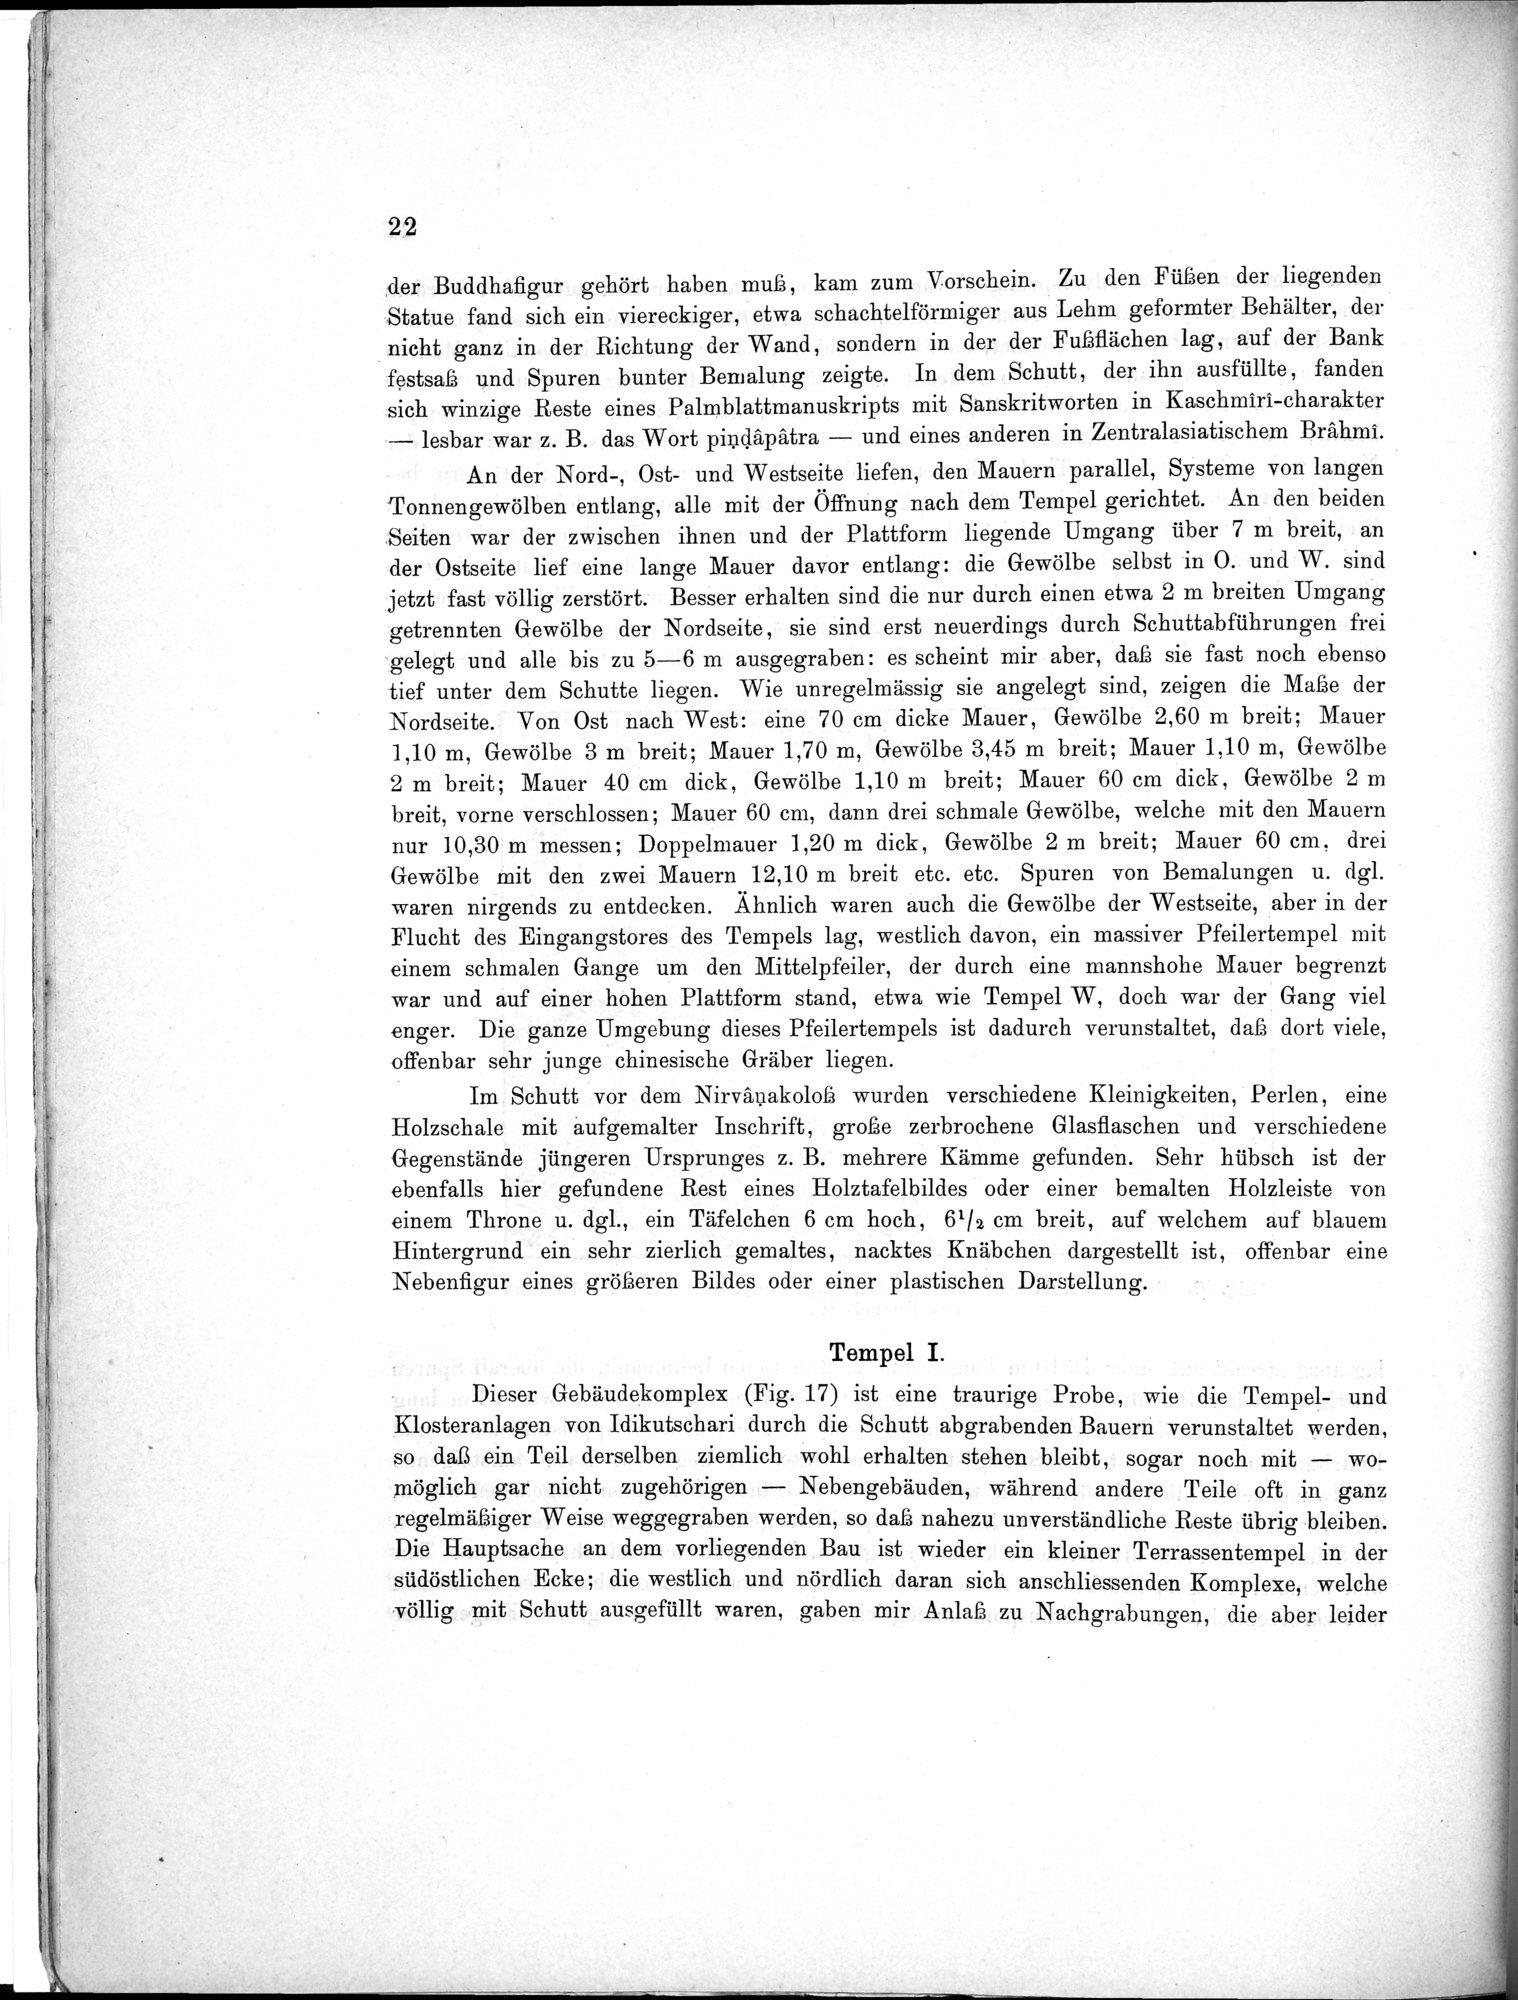 Bericht über archäologische Arbeiten in Idikutschari und Umgebung im Winter 1902-1903 : vol.1 / Page 32 (Grayscale High Resolution Image)